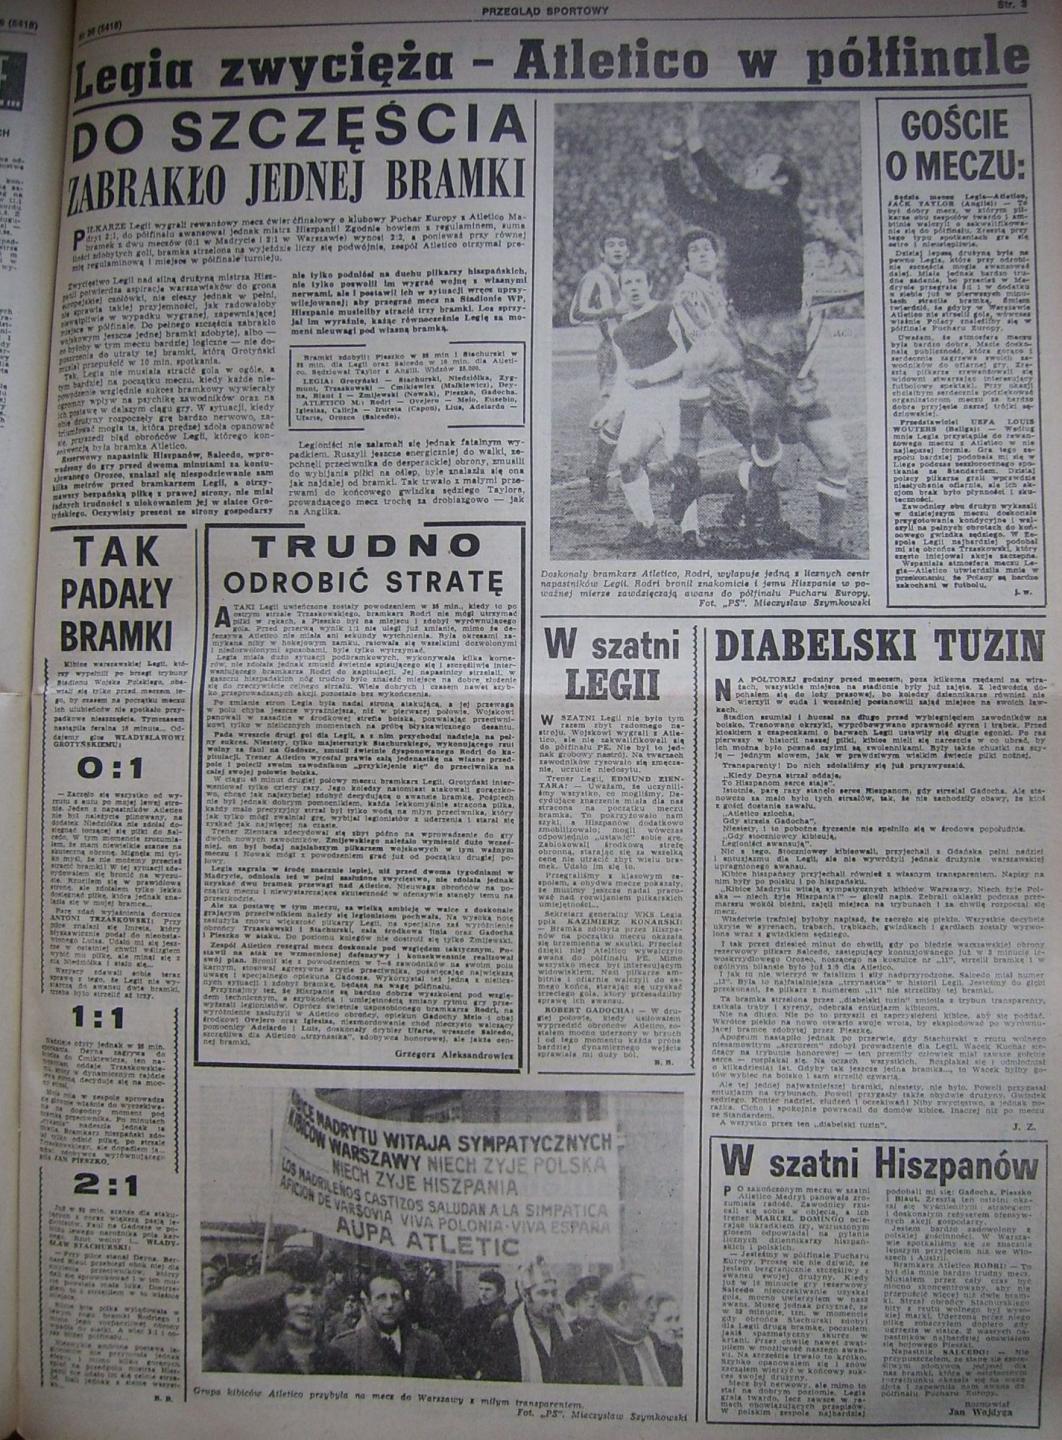 Przegląd Sportowy po Legia Warszawa - Atlético Madryt 2:1 (24.03.1971) 2